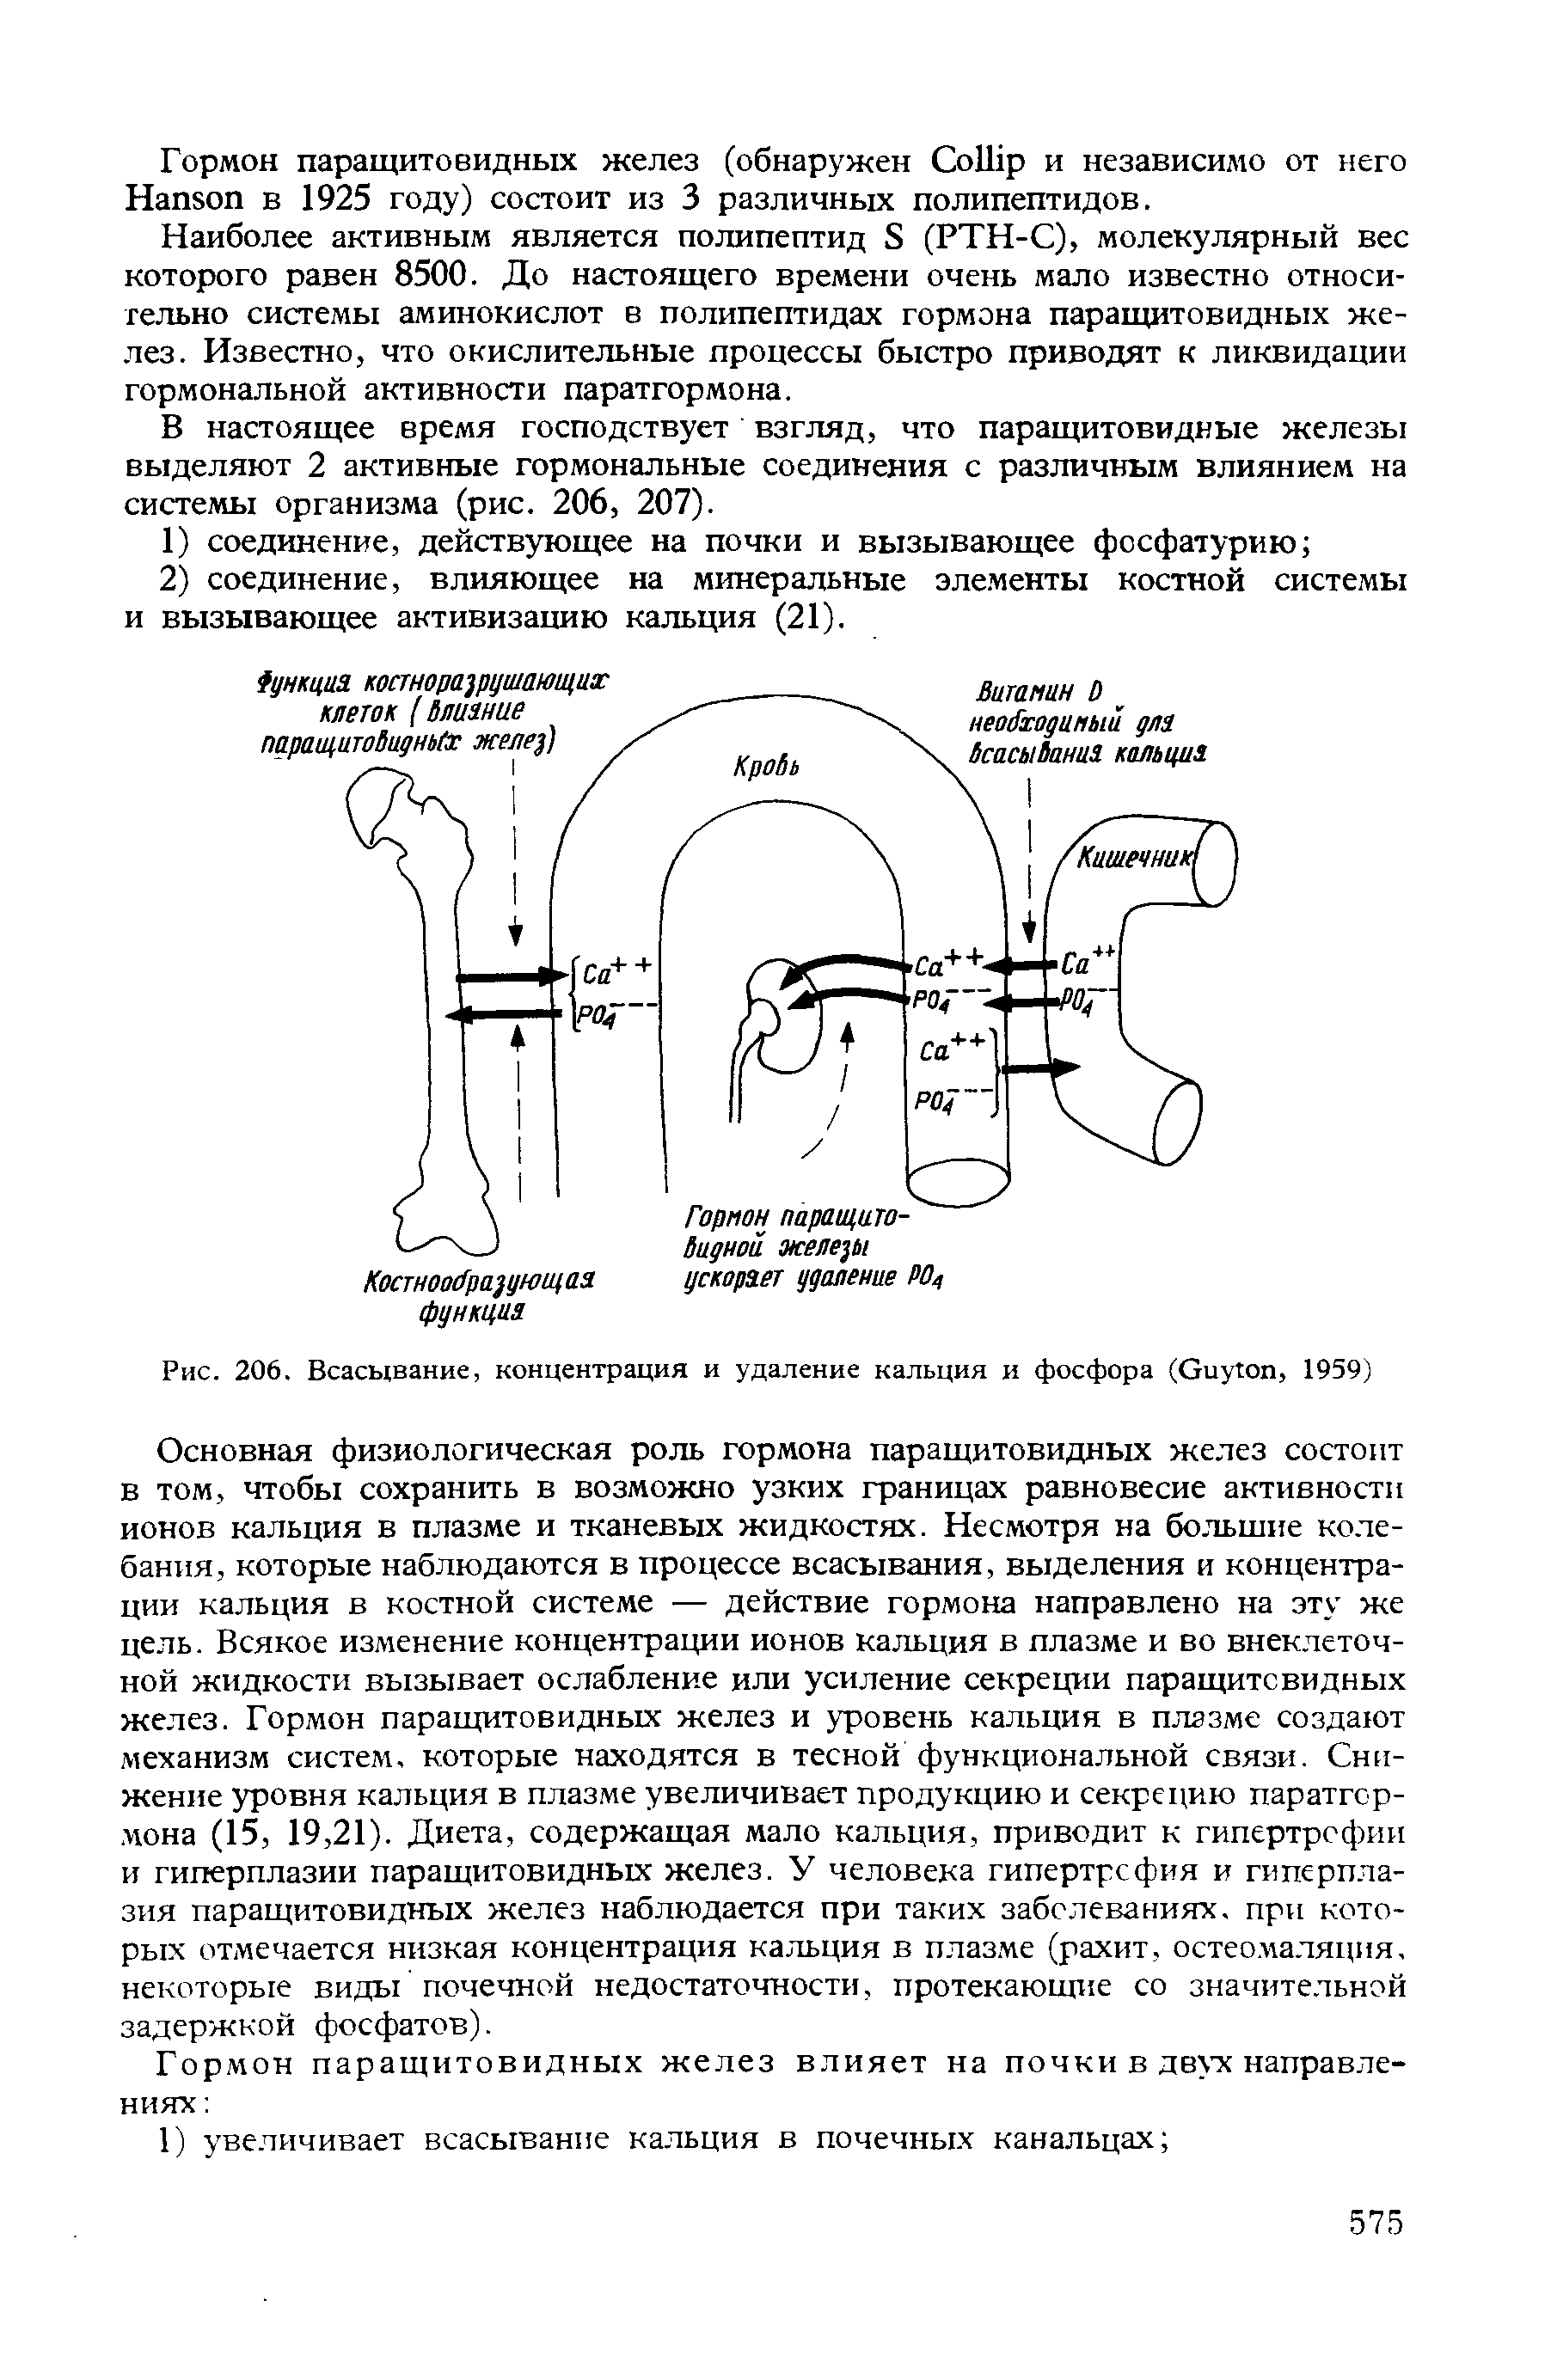 Рис. 206. Всасывание, концентрация и удаление кальция и фосфора (G , 1959)...